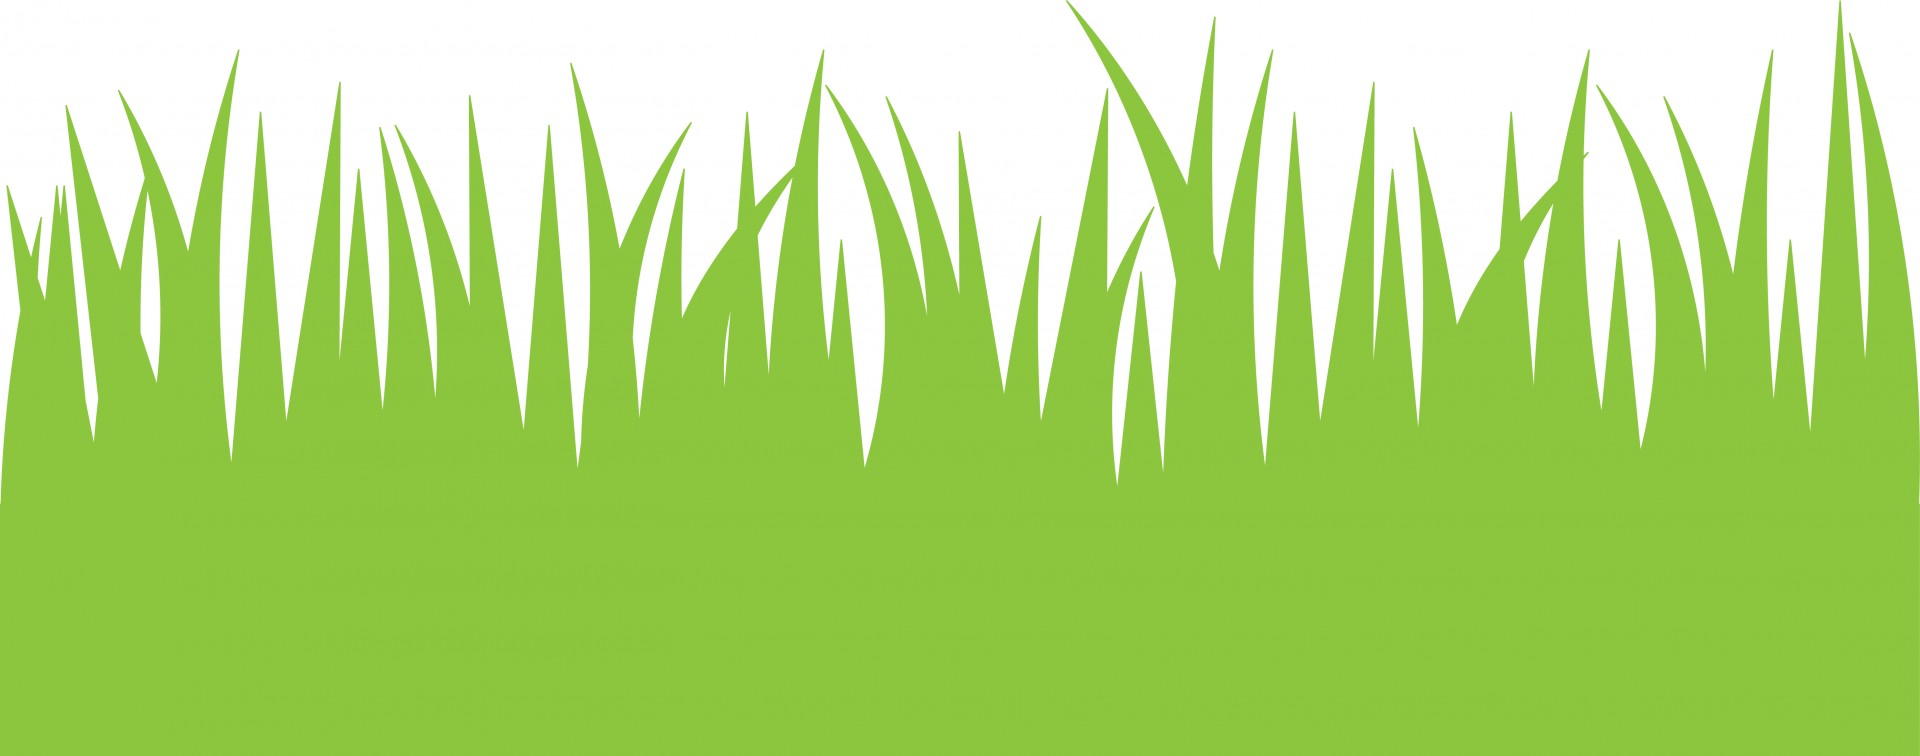 Green Grass Clipart - Clip Art Grass